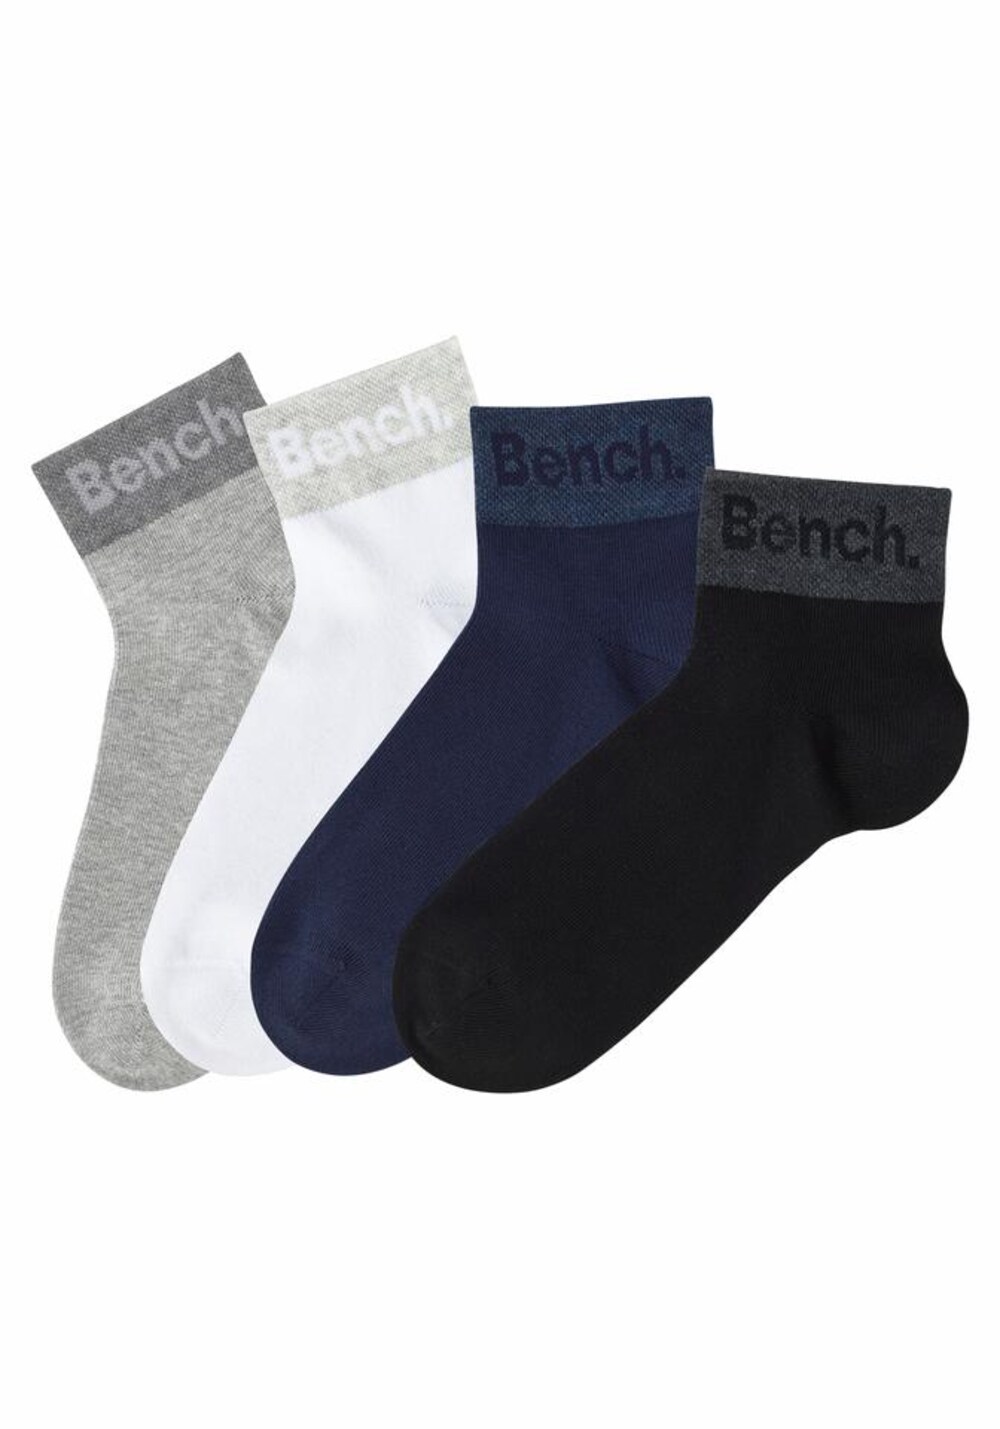 Носки Bench, смешанные цвета носки h i s смешанные цвета